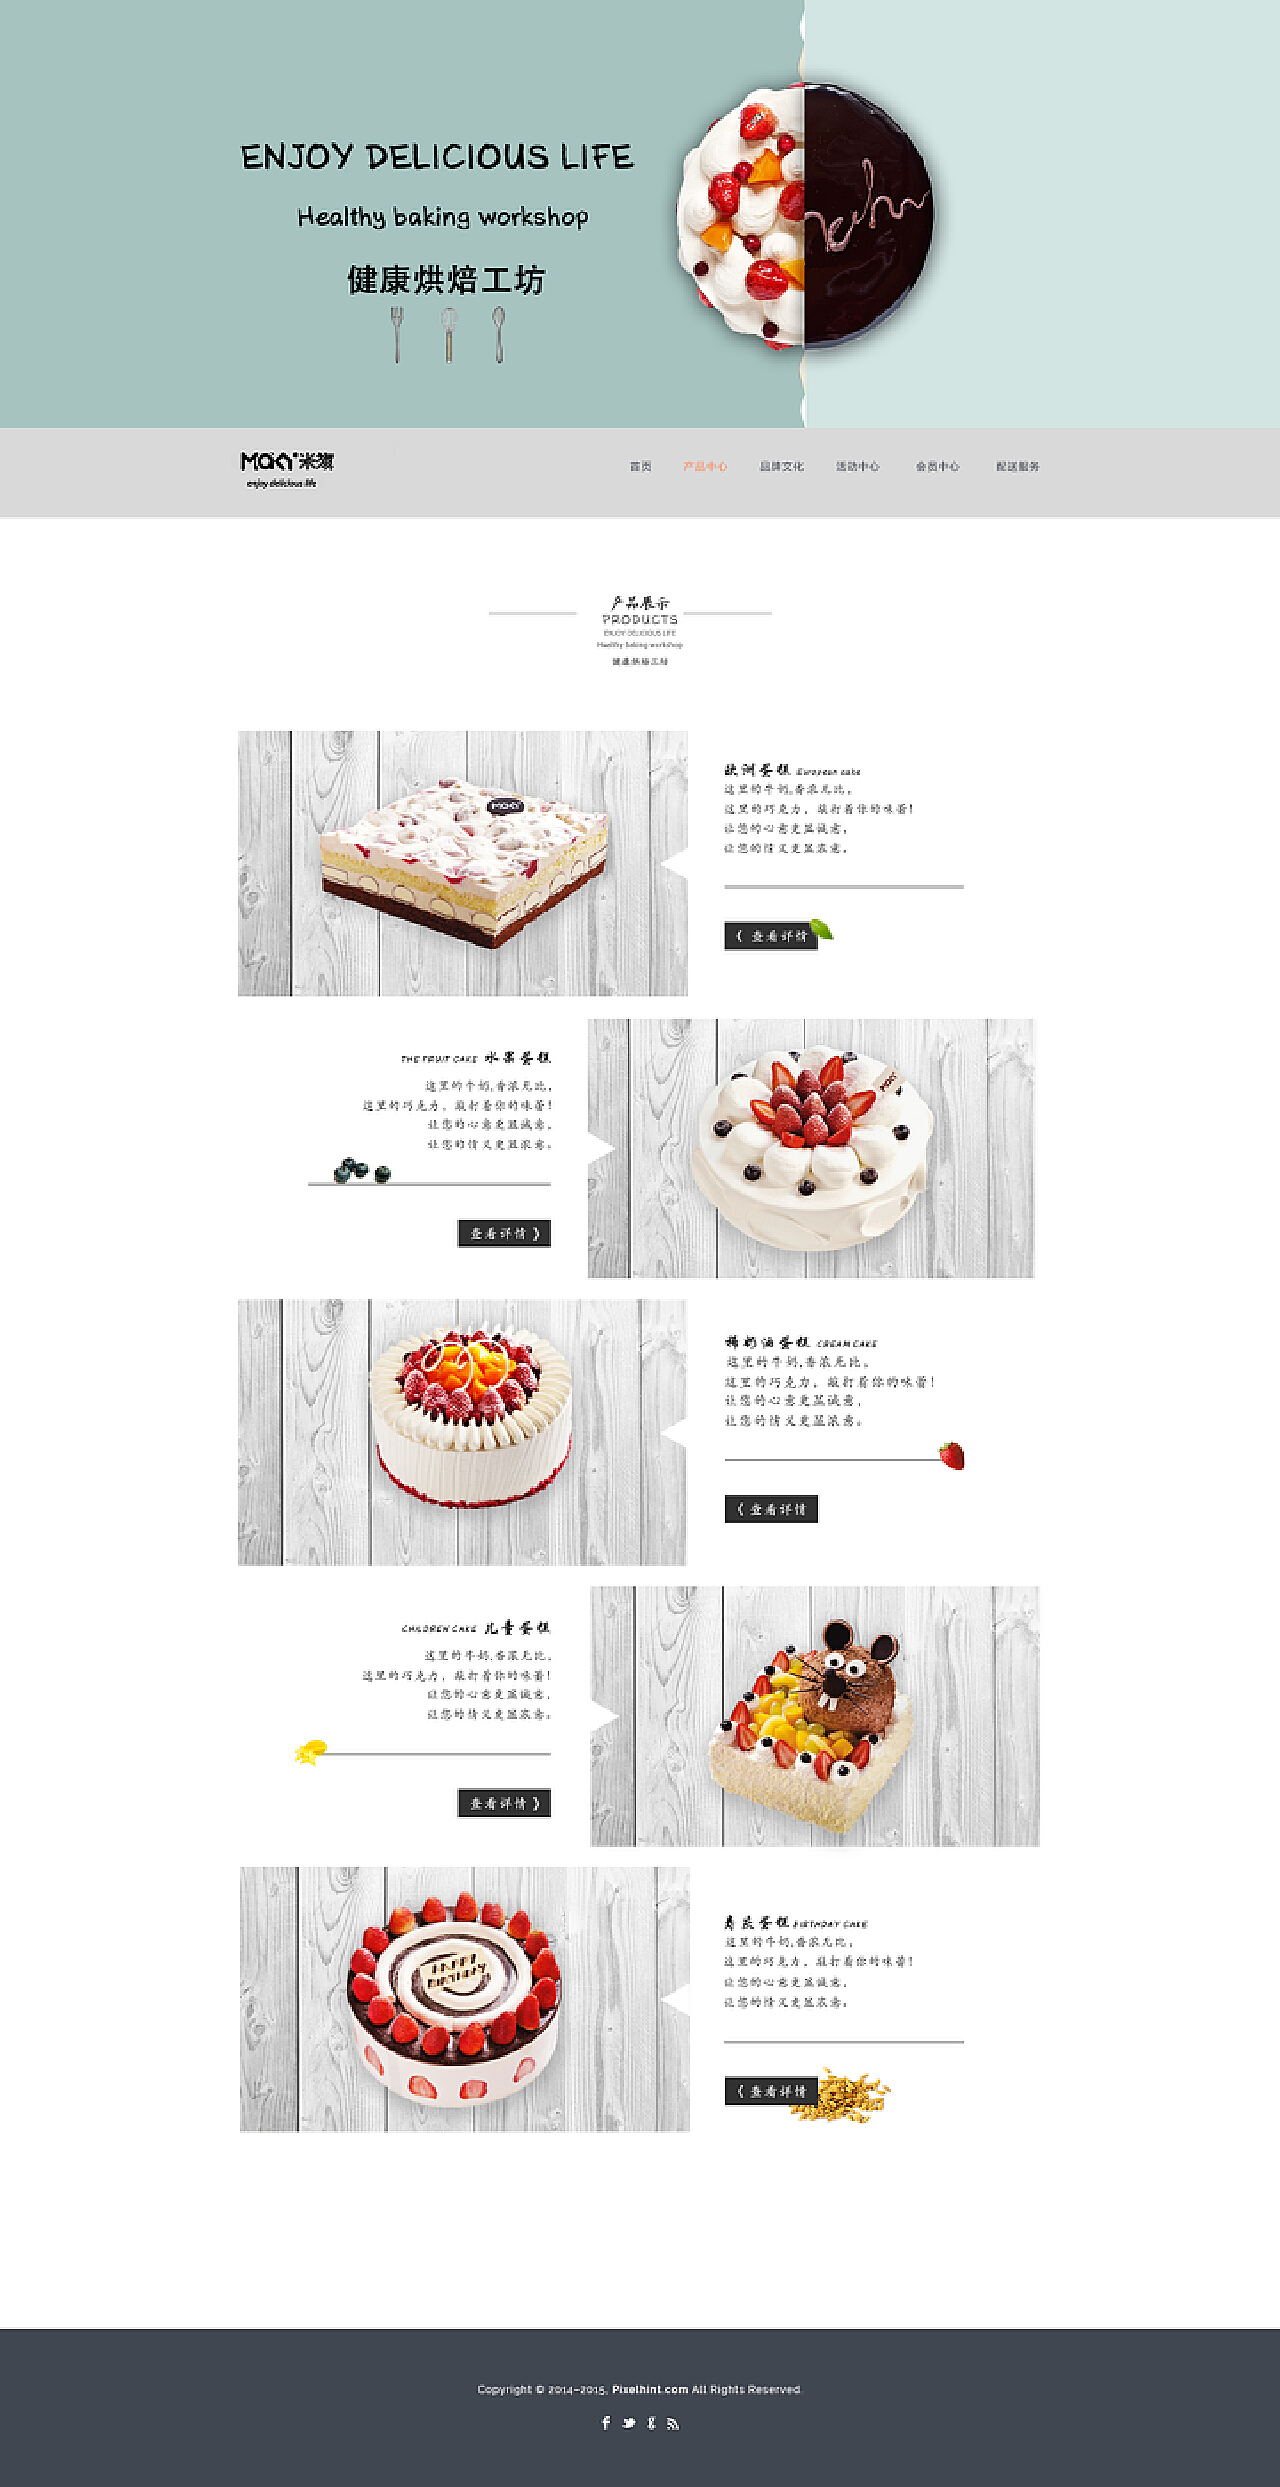 【双层蛋糕】哈尔滨米旗蛋糕速递店|米旗生日蛋糕 许愿星星(酸奶)_仙女会魔法